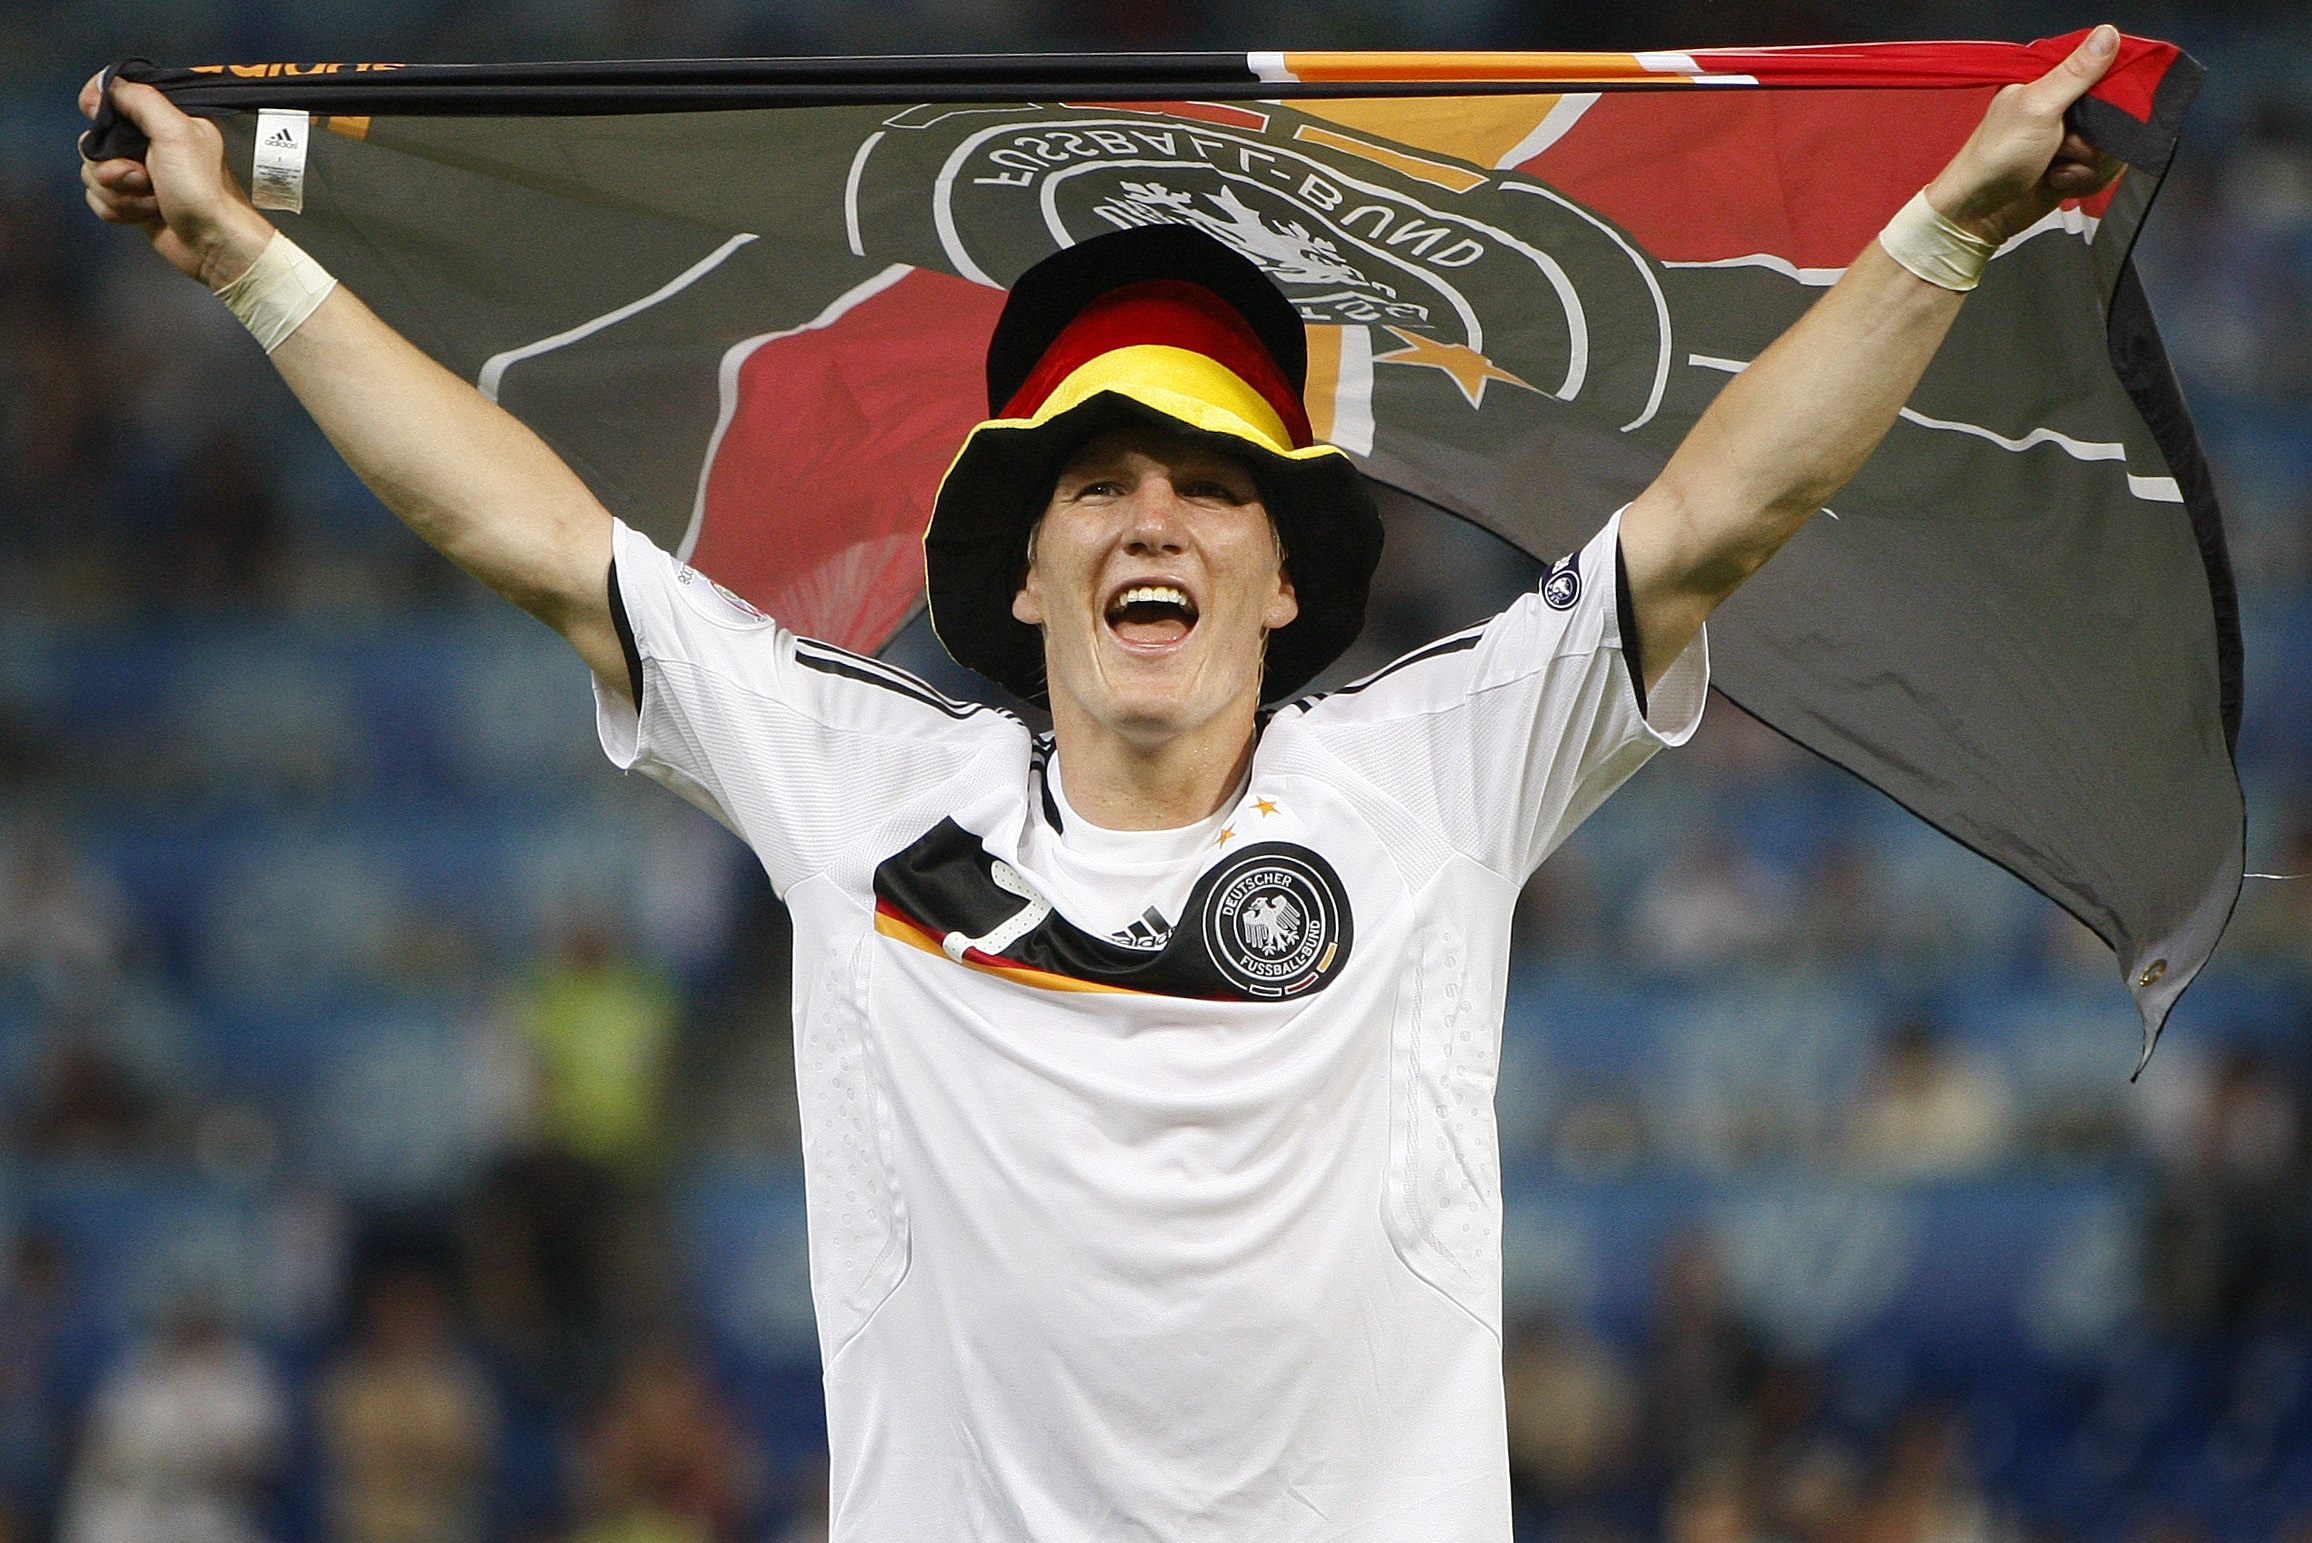 Euro 2008: Germany beats Turkey